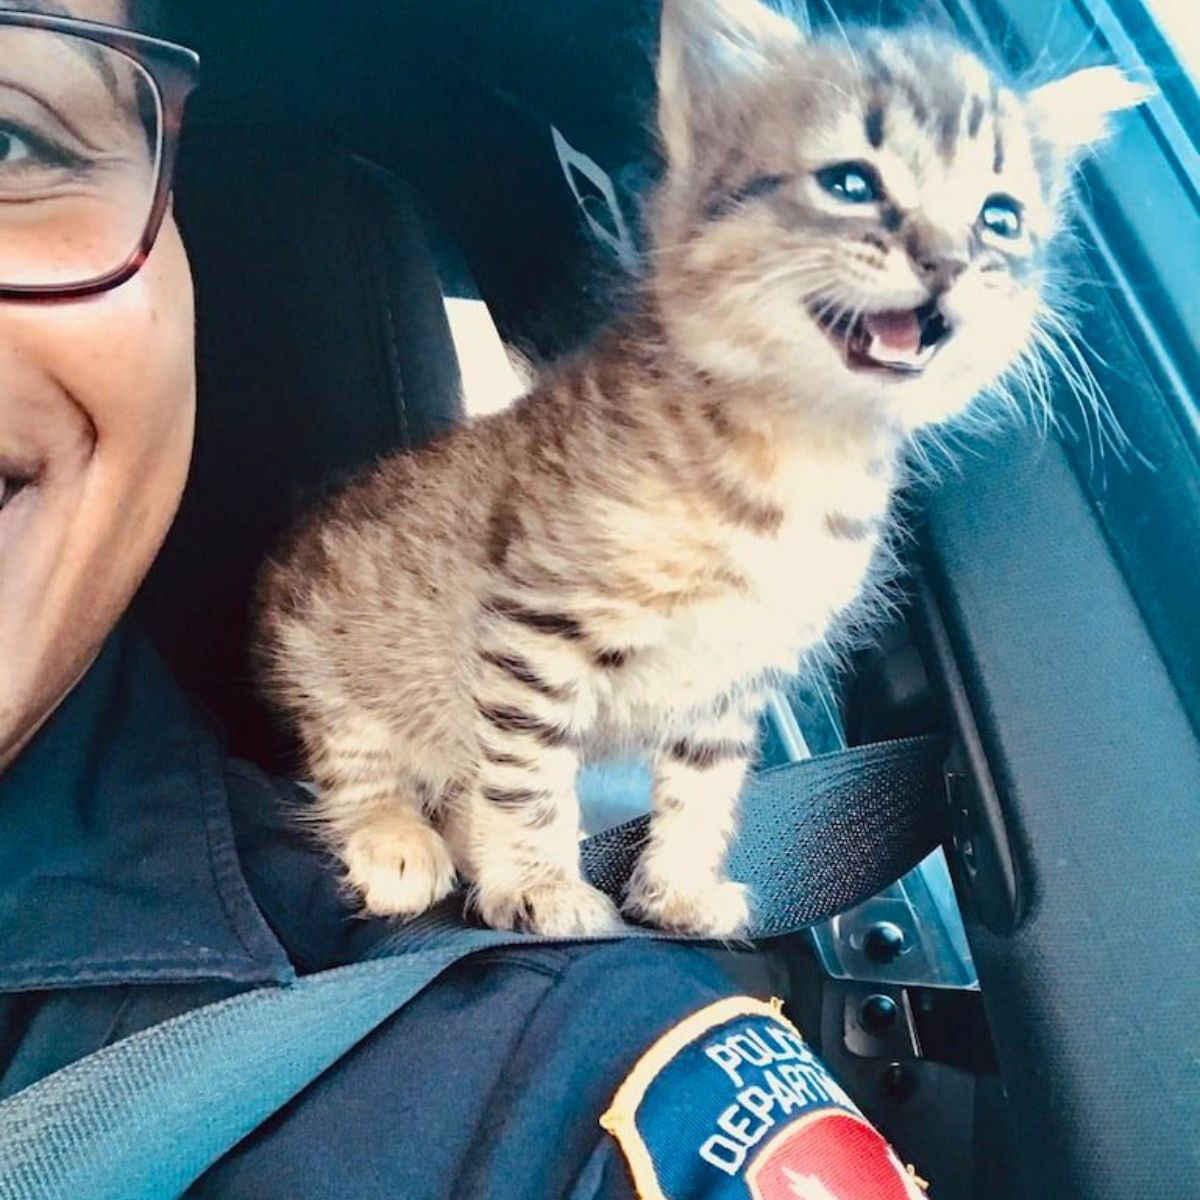 Policiais resgatam uma gatinha e a promovem a agente